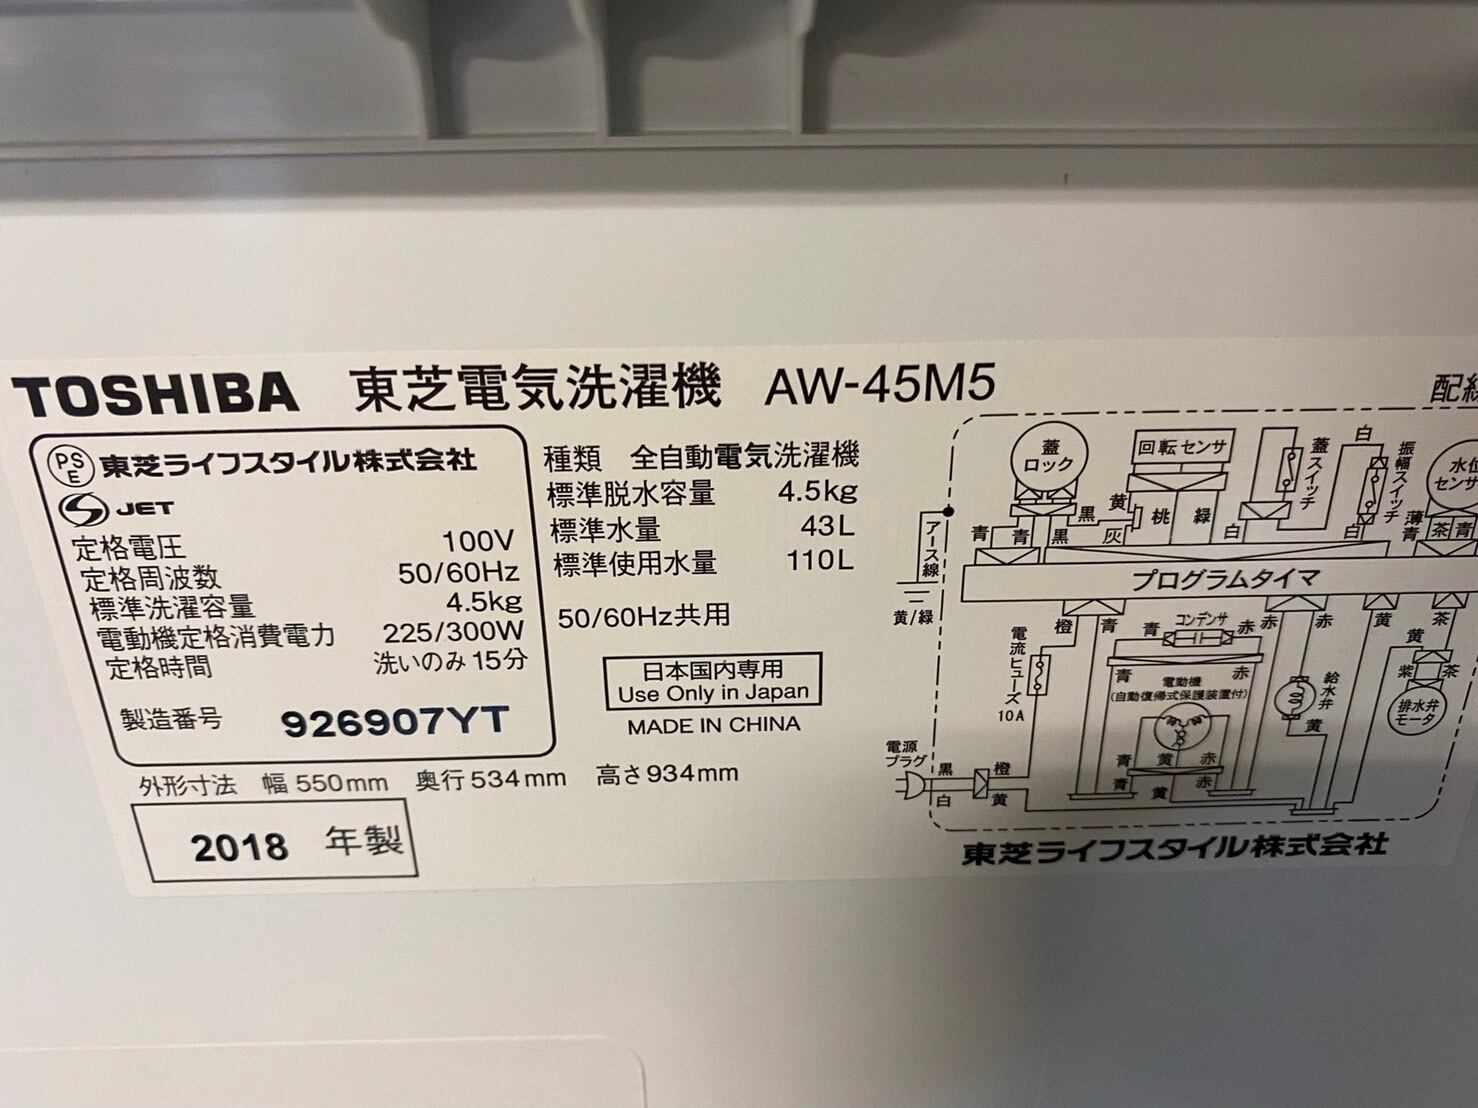 都内近郊送料無料☆2018年式☆東芝☆AW-45M5☆4.5kg☆全自動洗濯機